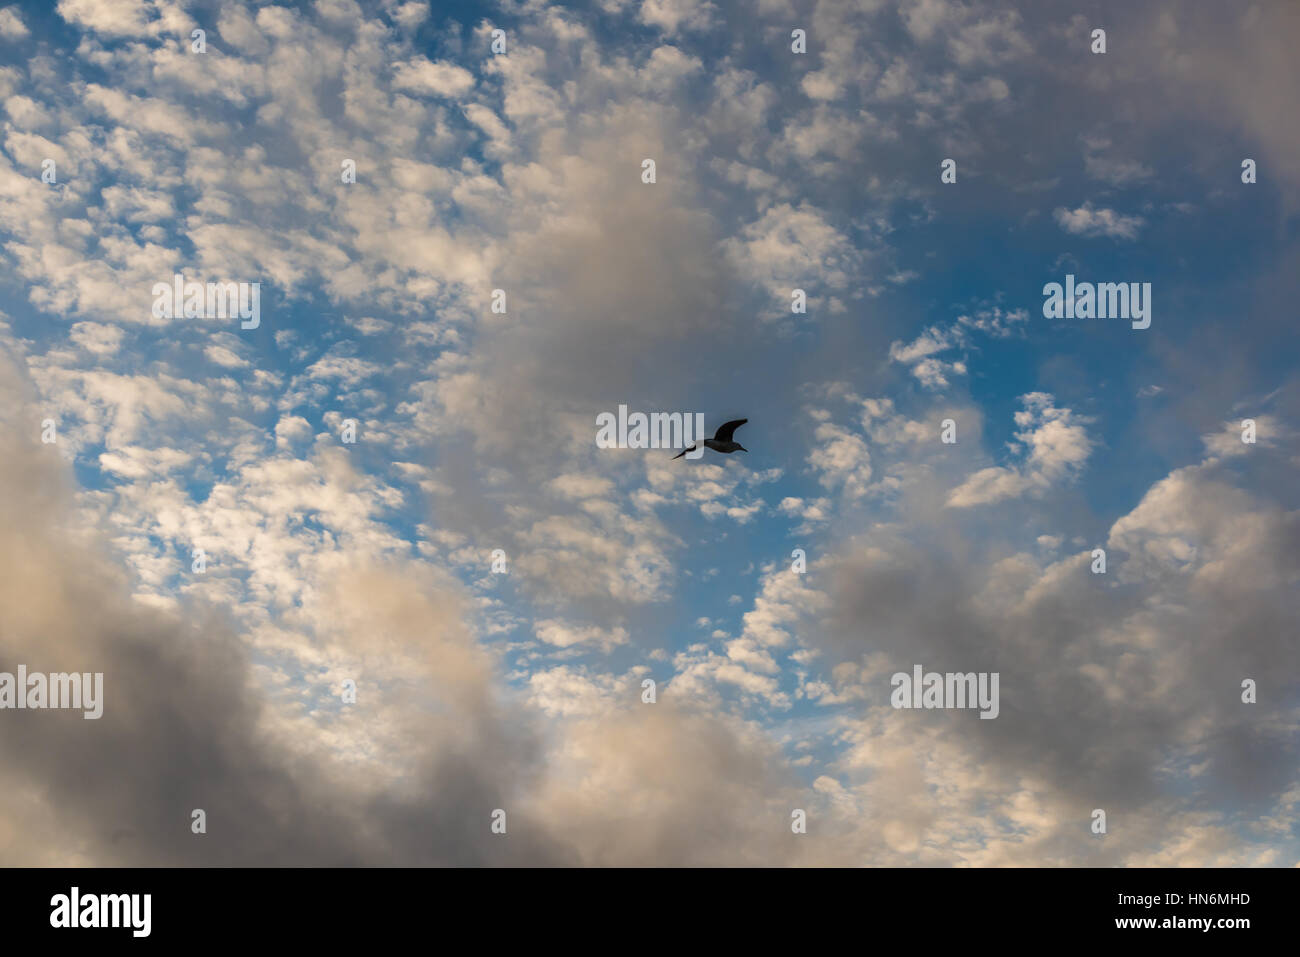 Eine Möwe Silhouette gegen Wolkengebilde mit vielen kleinen Wolken Stockfoto